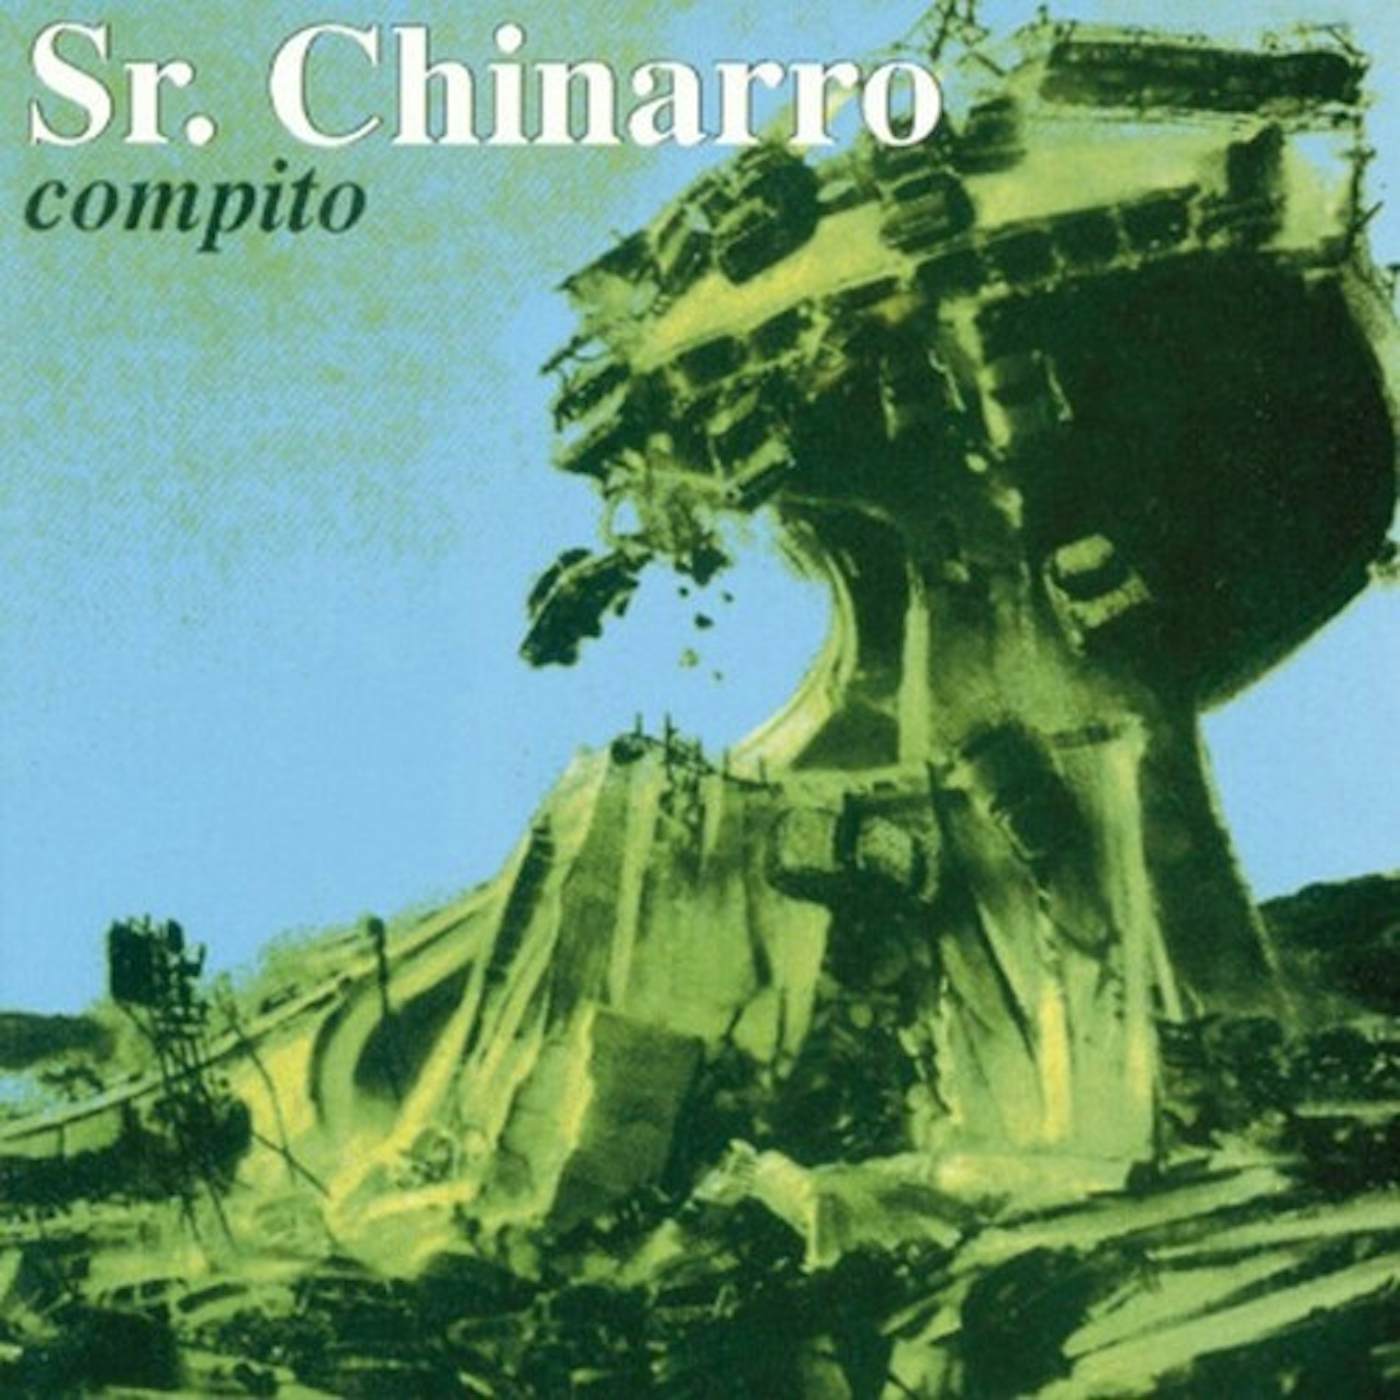 Sr. Chinarro Compito Vinyl Record